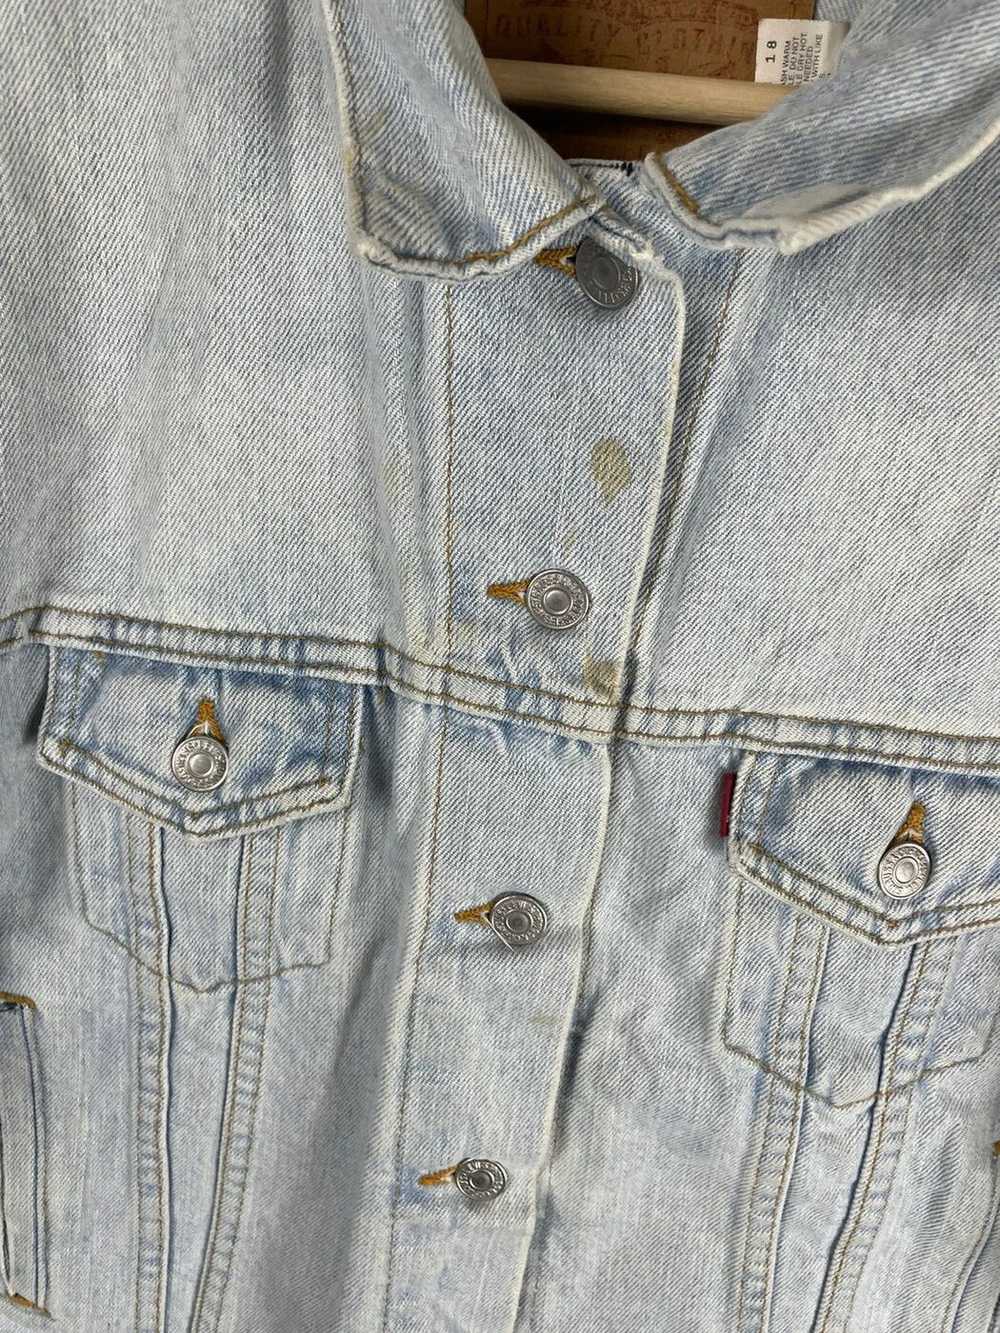 Denim Jacket × Levi's × Vintage Vintage 1980s Lev… - image 3